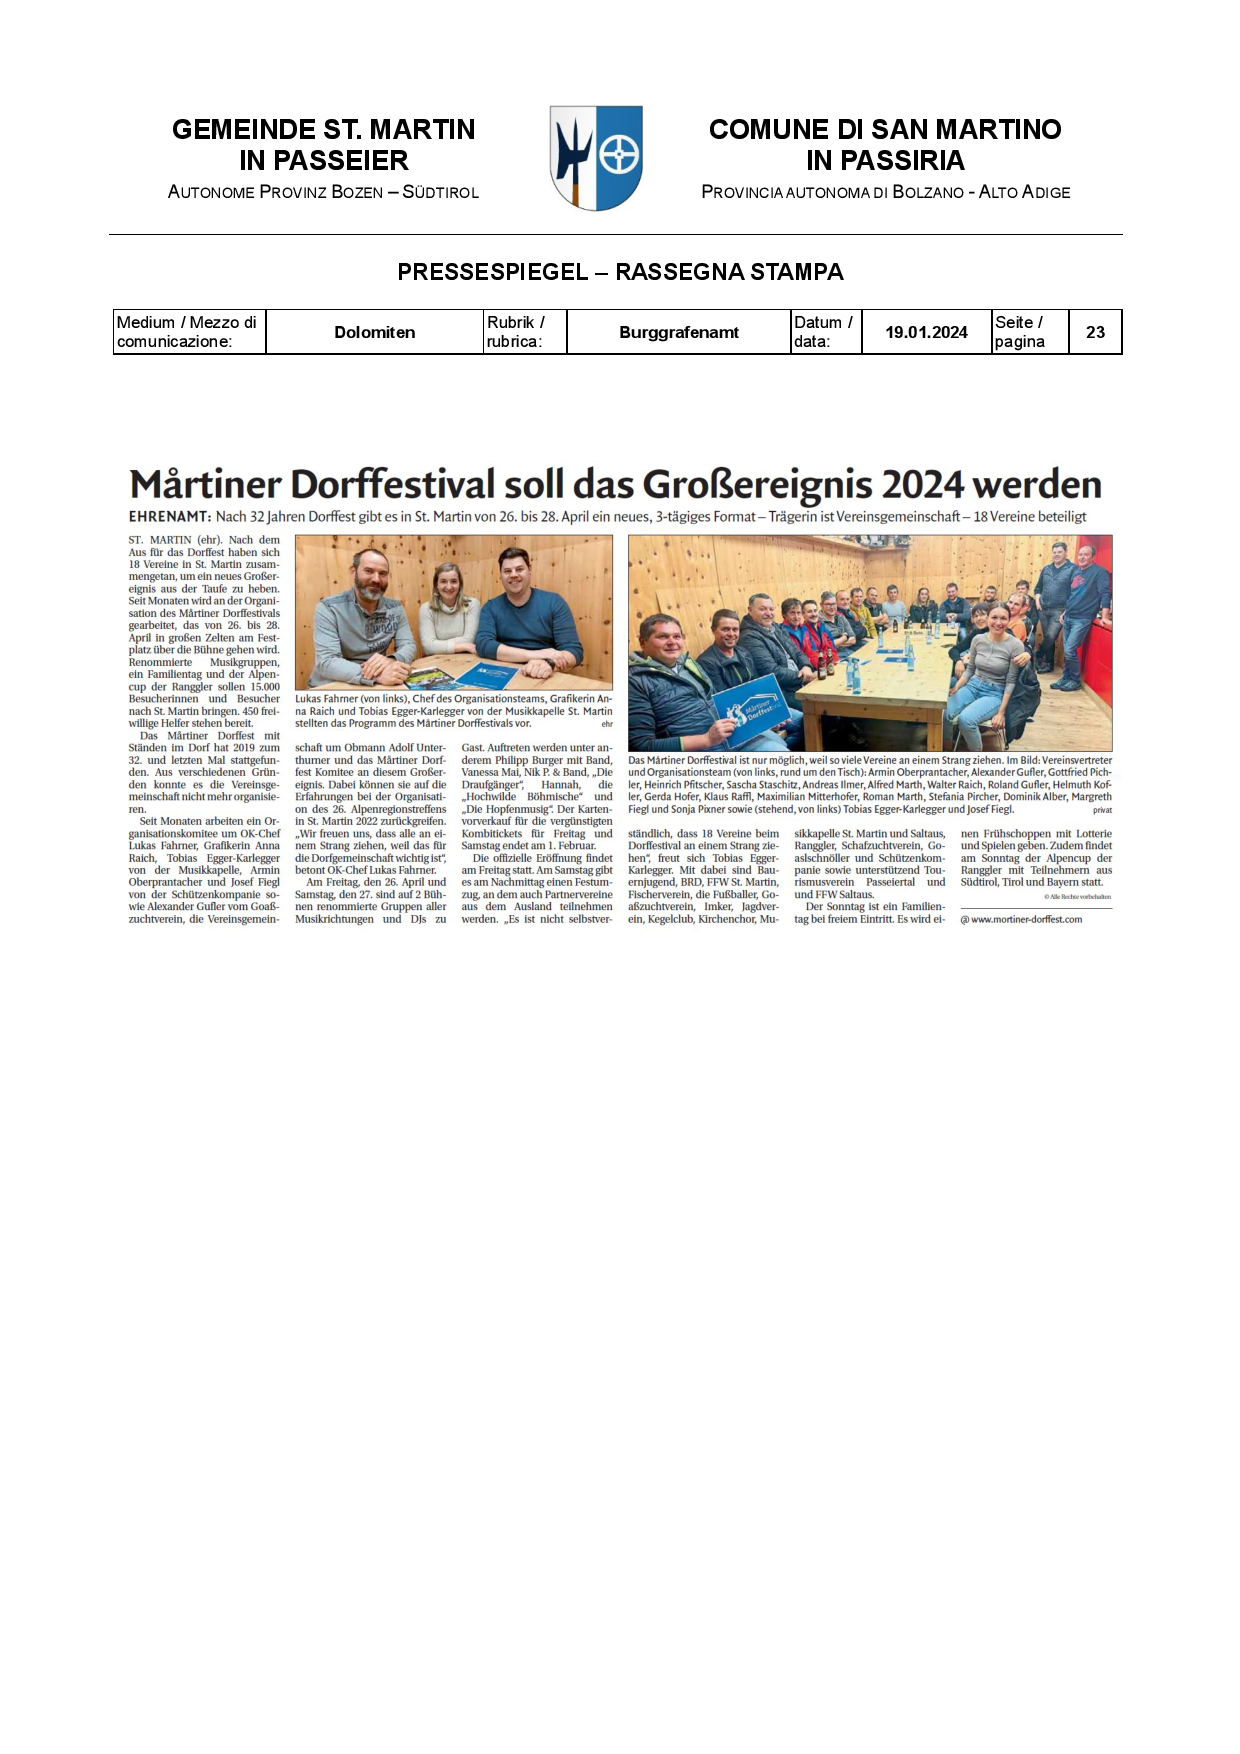 Dolomiten - Martiner Dorffestival soll das Großereignis 2024 werden